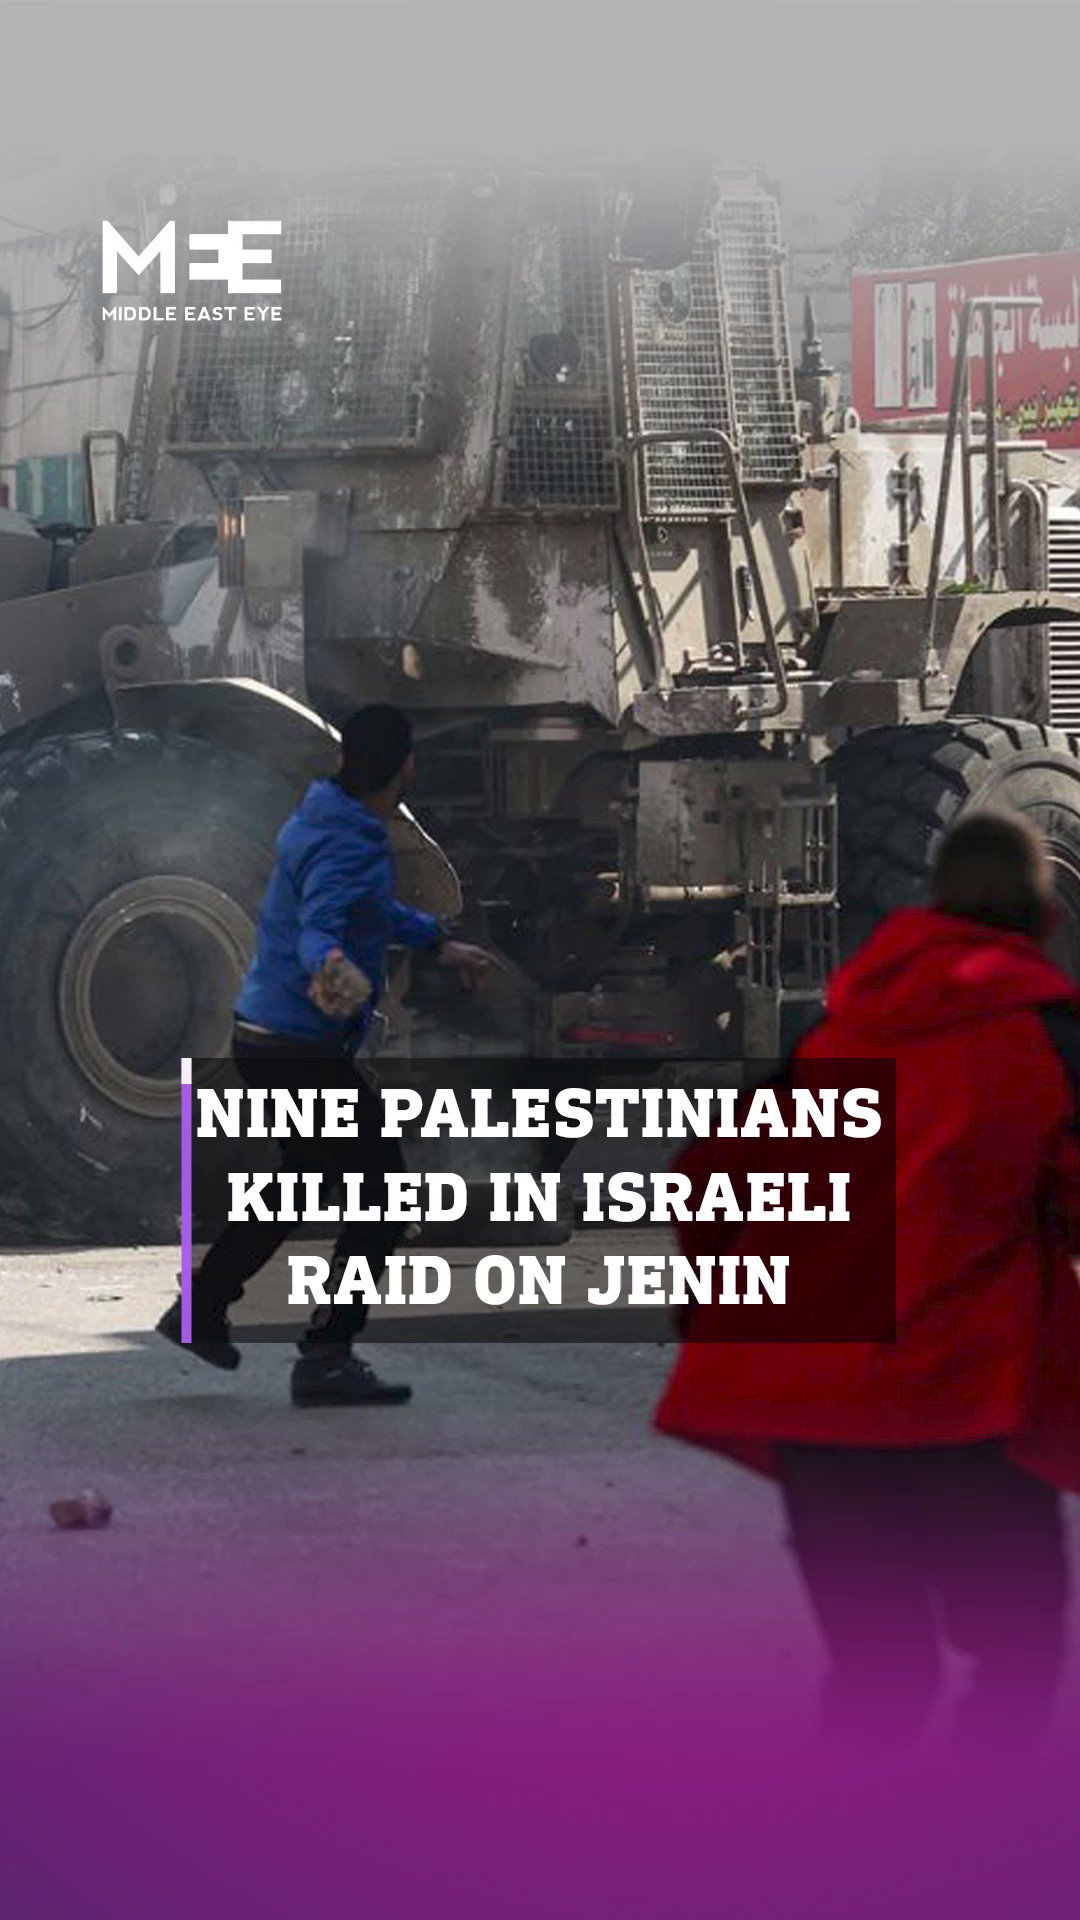 इसराइल की वेस्ट बैंक के जनीन कैंप पर बड़ी रेड, नौ फ़लस्तीनियों की मौत